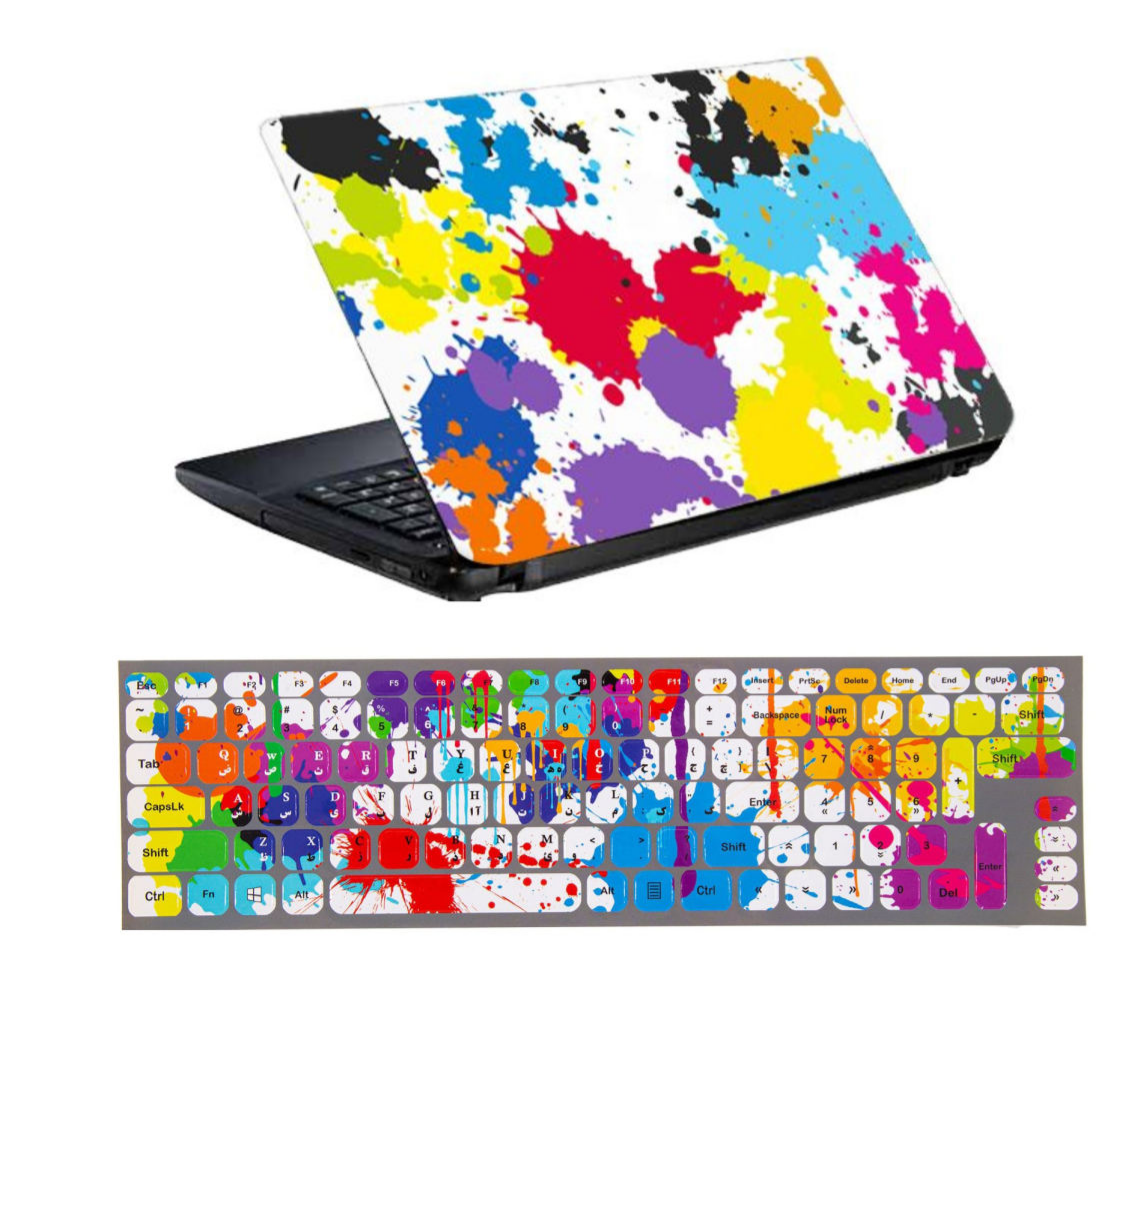 پوسته -اسکین لپ تاپ-نوت بوک برند نامشخص-- استیکر لپ تاپ طرح لکه رنگ کد 0917-98 برای لپ تاپ 15.6 اینچ 